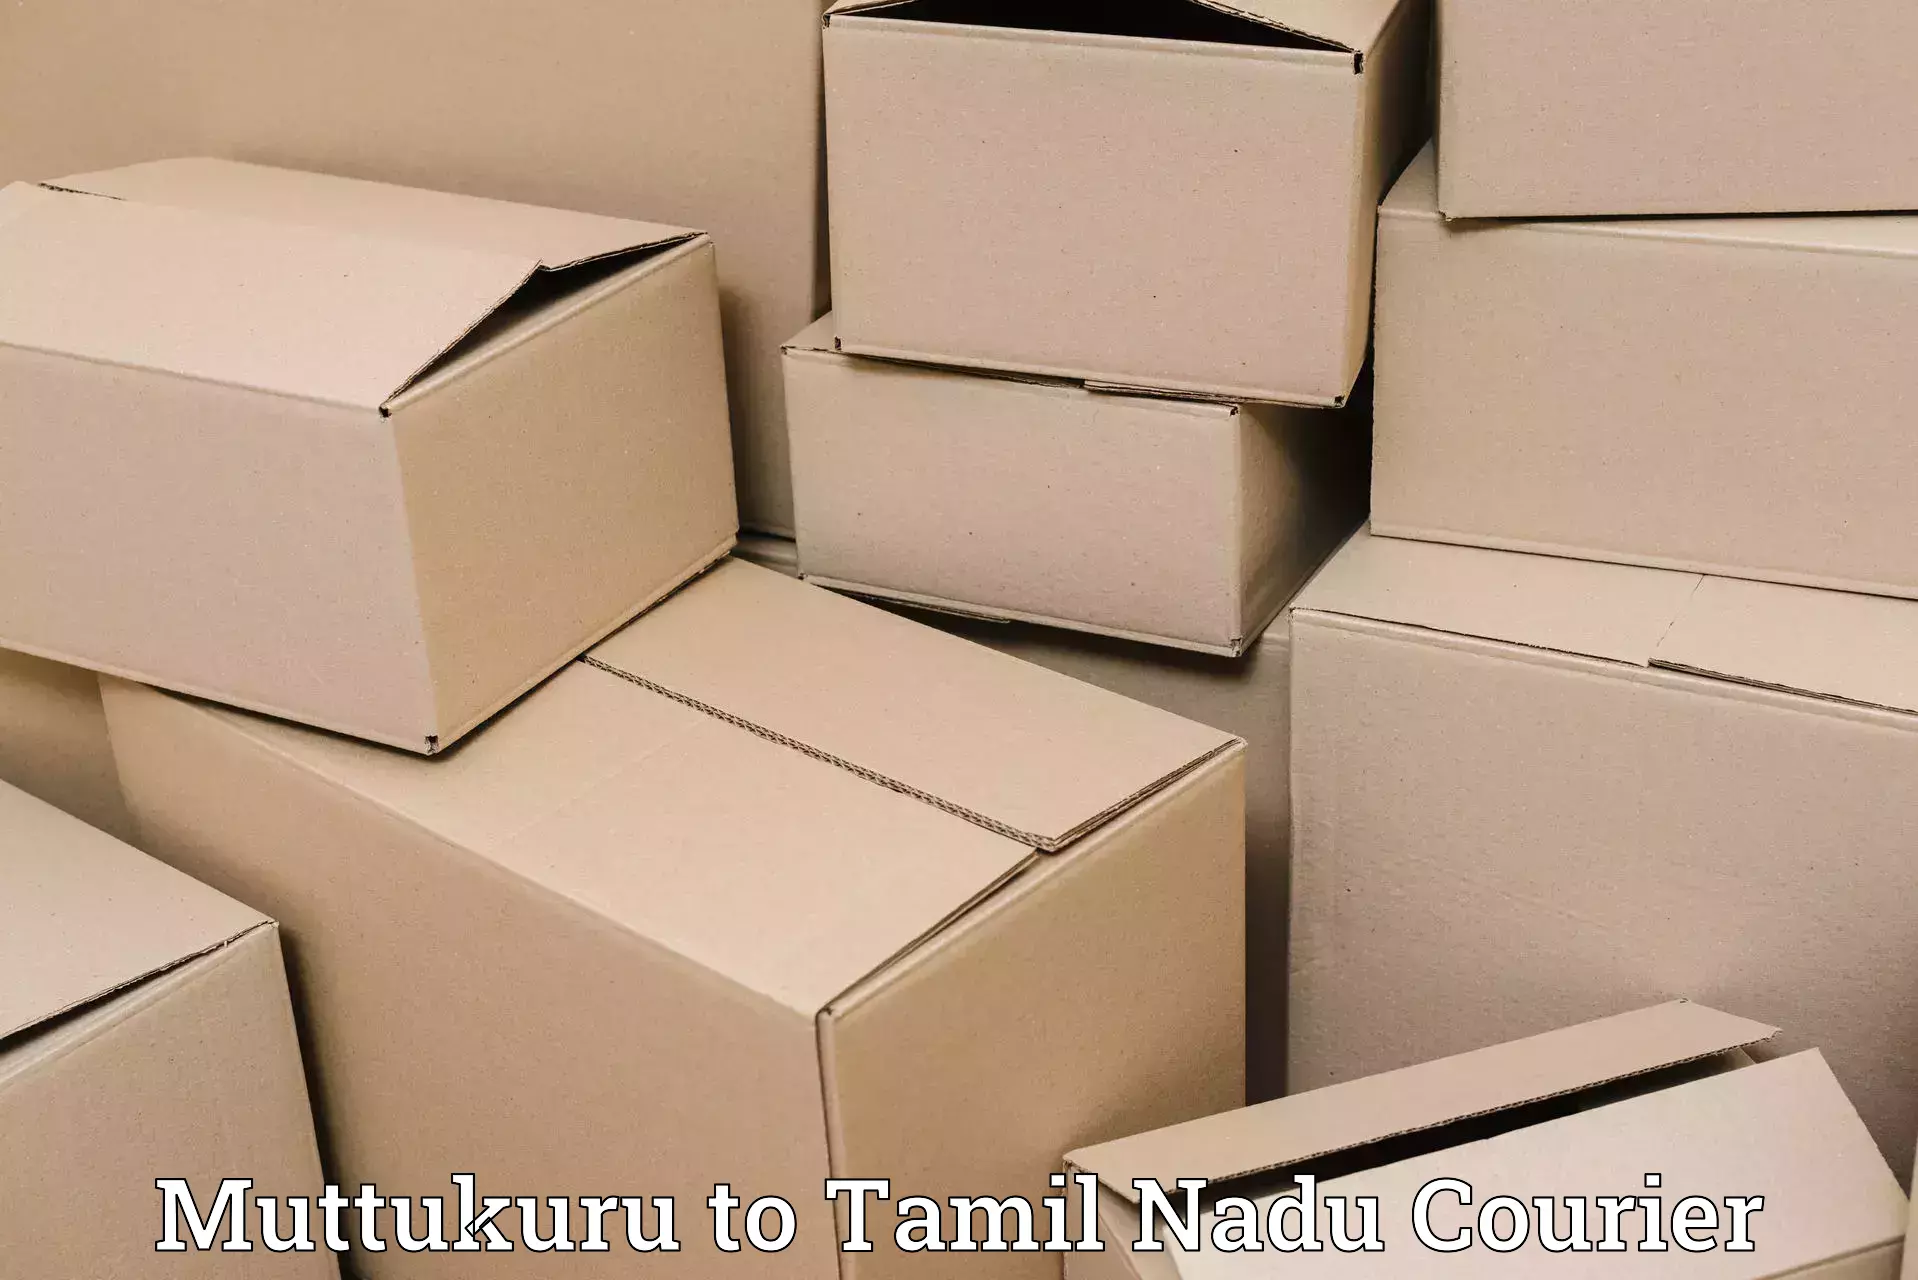 High-speed parcel service Muttukuru to Cuddalore